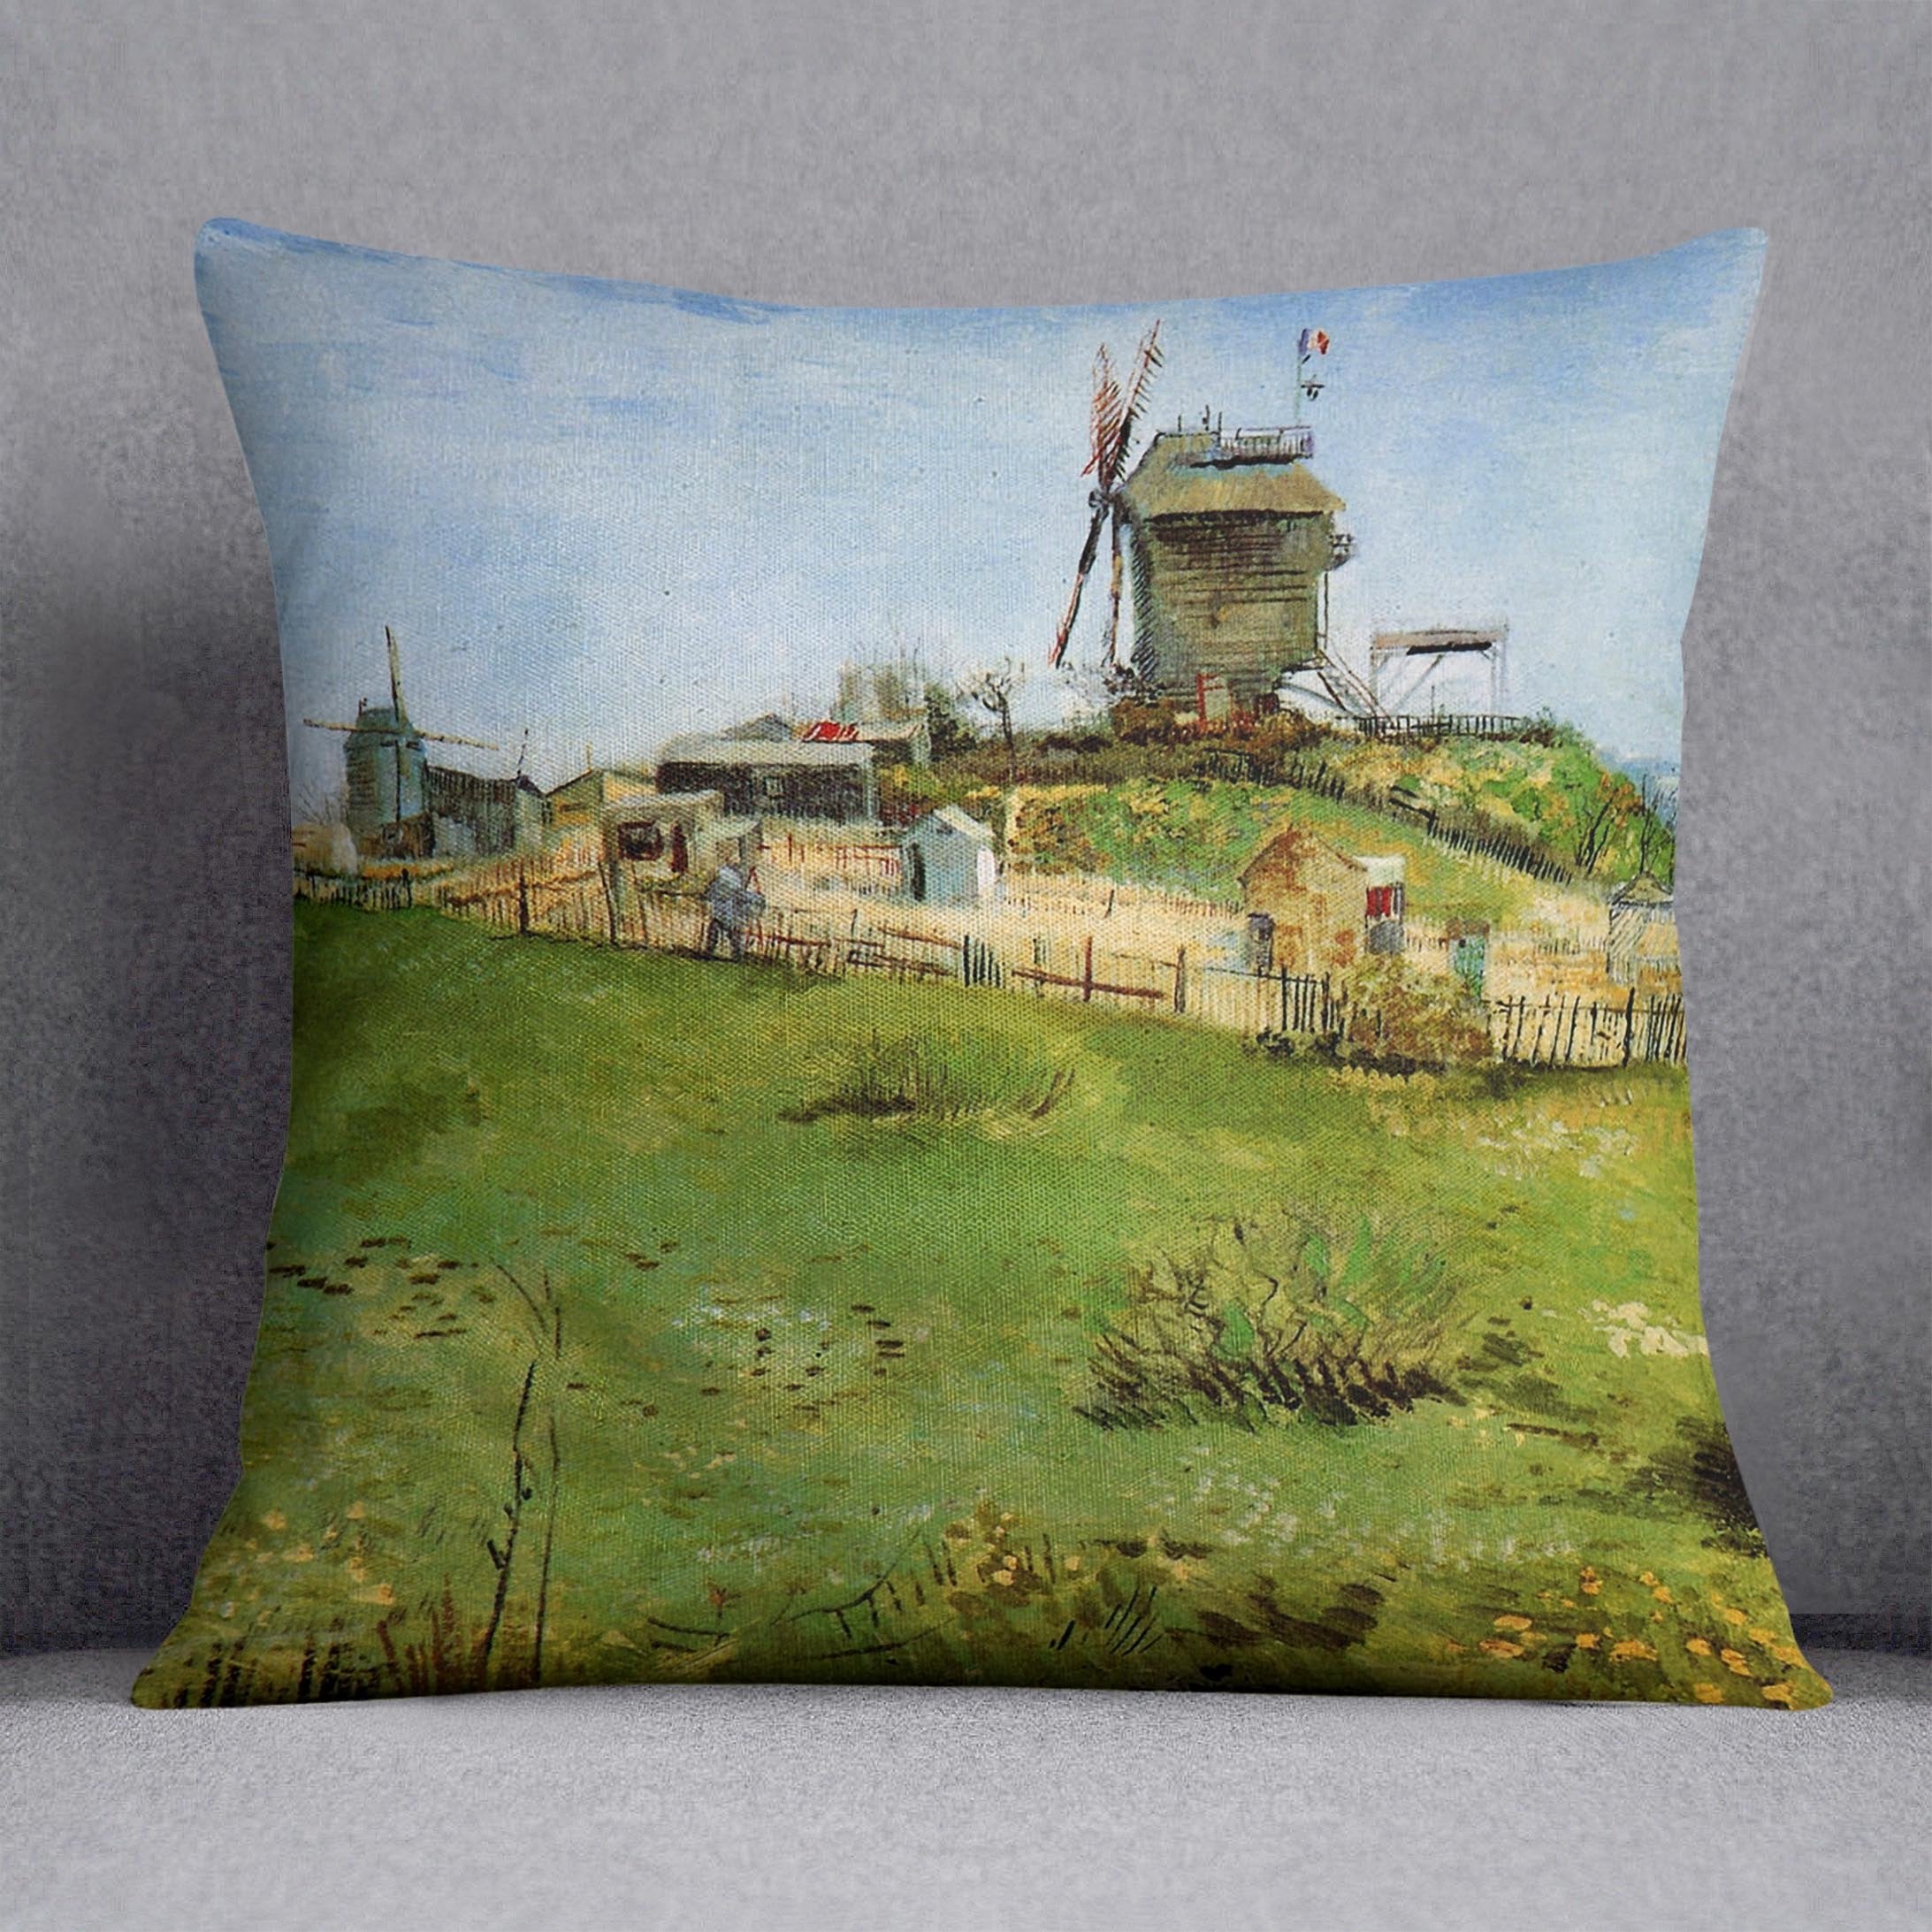 Le Moulin de la Galette 4 by Van Gogh Throw Pillow